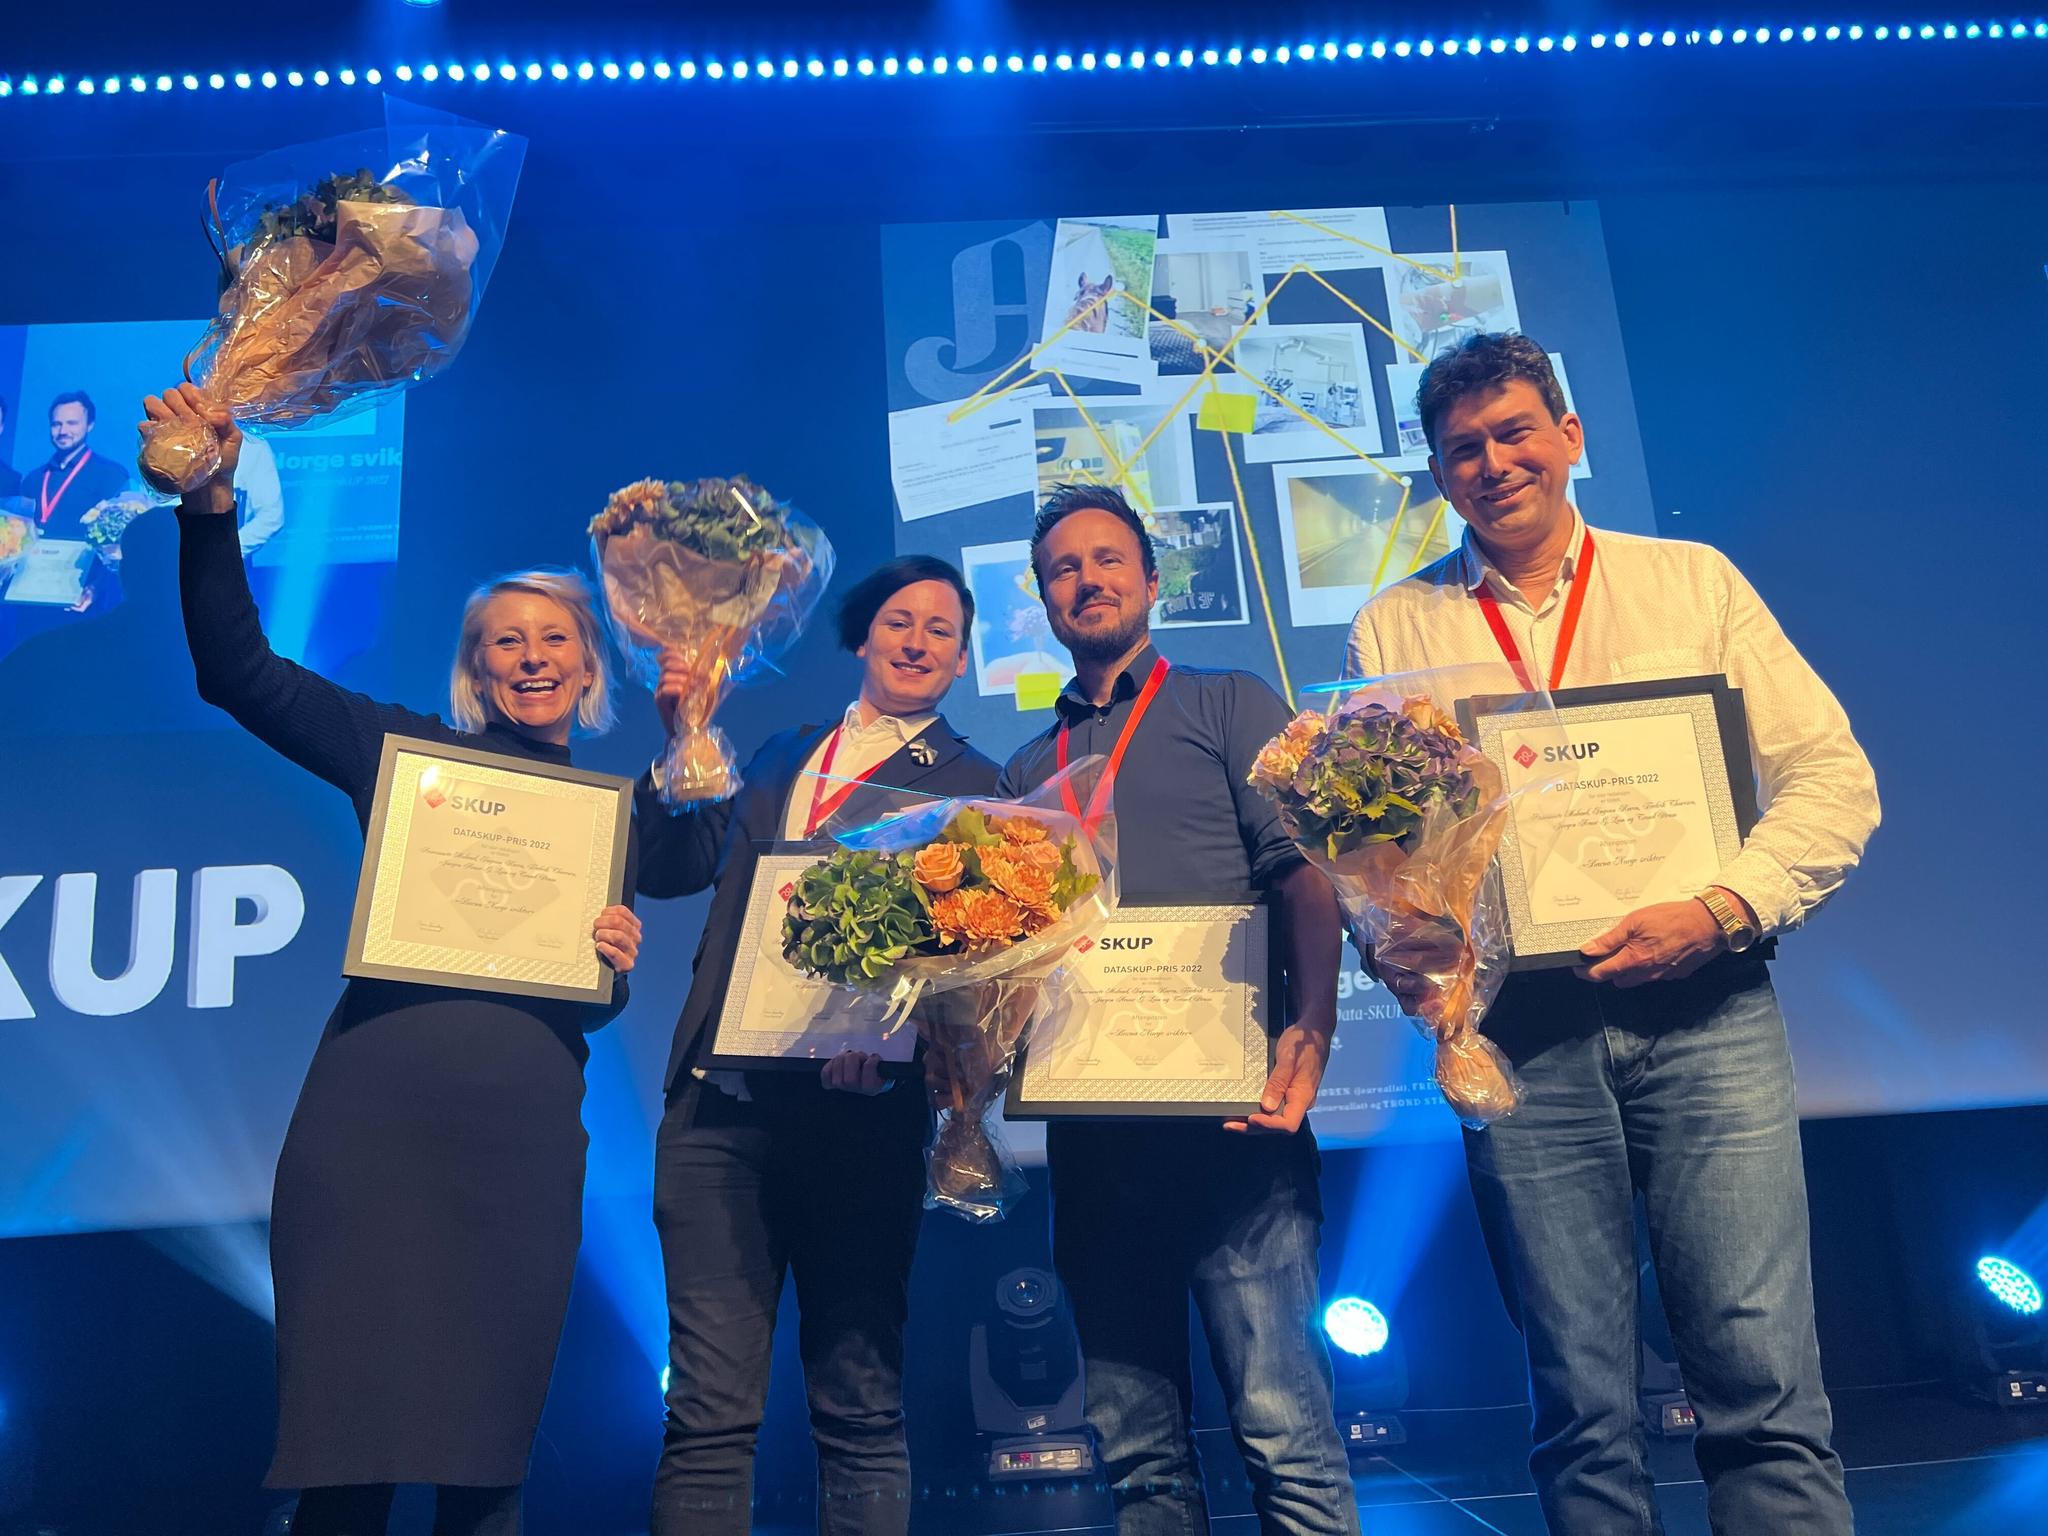 Glade vinnere av Data-skup-prisen fra Aftenposten. Fra venstre: Annemarte Moland, Jørgen Arnor Gårdsø Lom, Fredrik Thoresen og Trond J. Strøm.